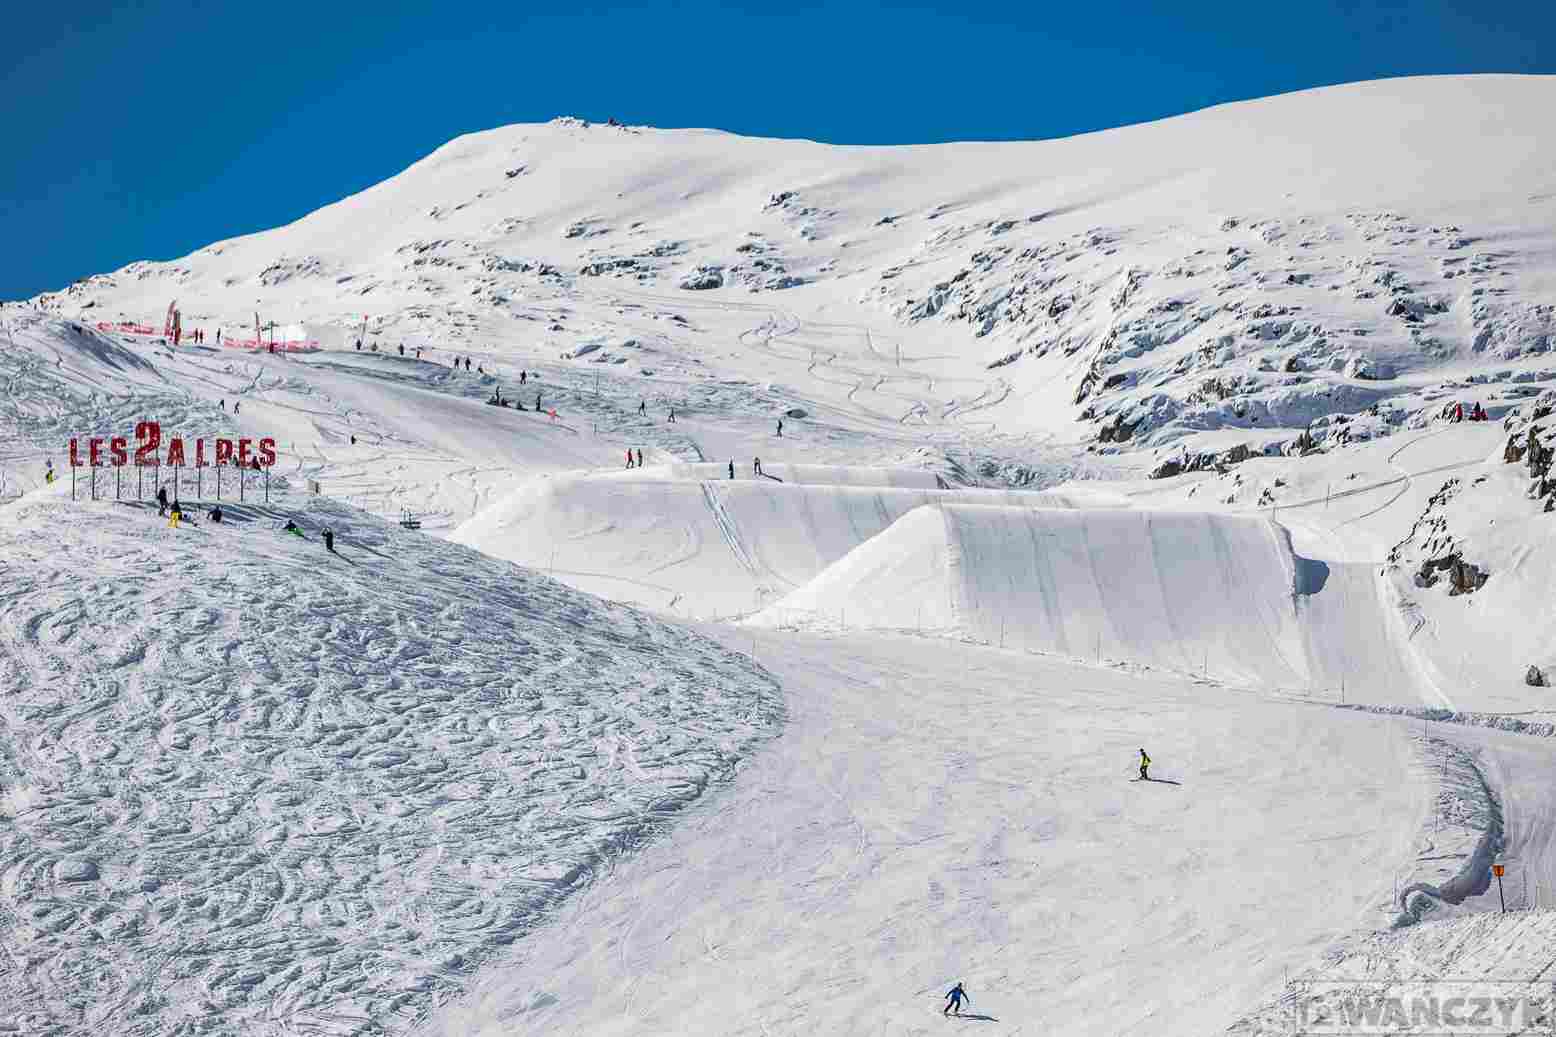 warunki śniegowe w ośrodku Les Deux Alpes